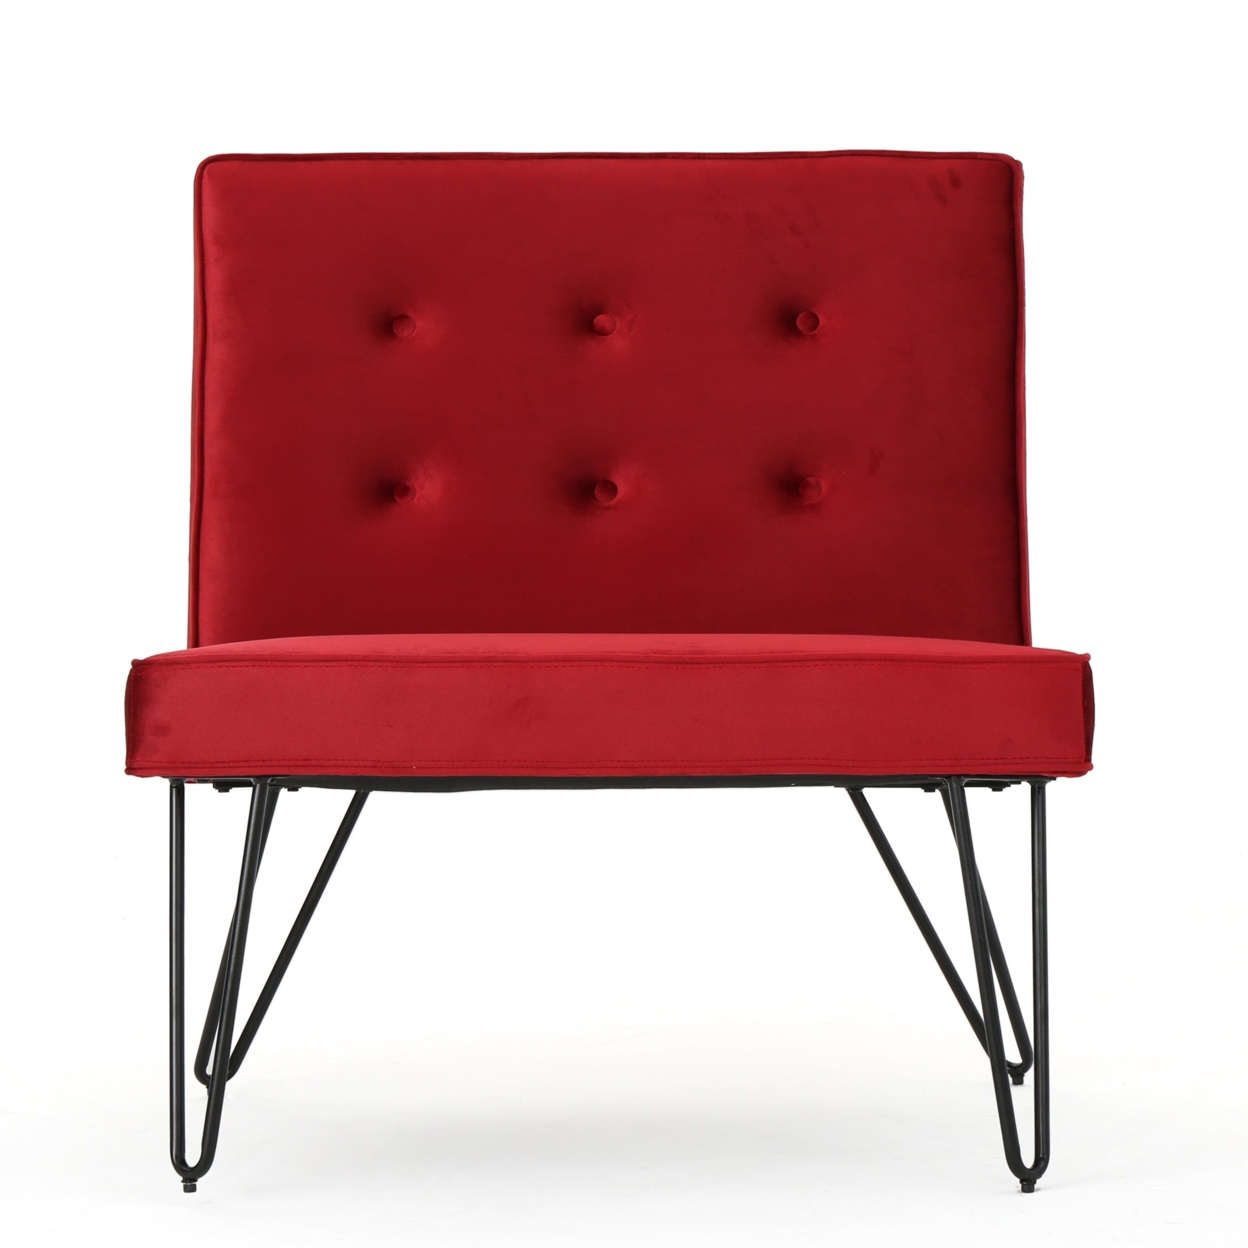 DuSoleil New Velvet Modern Armless Chair - Navy Blue